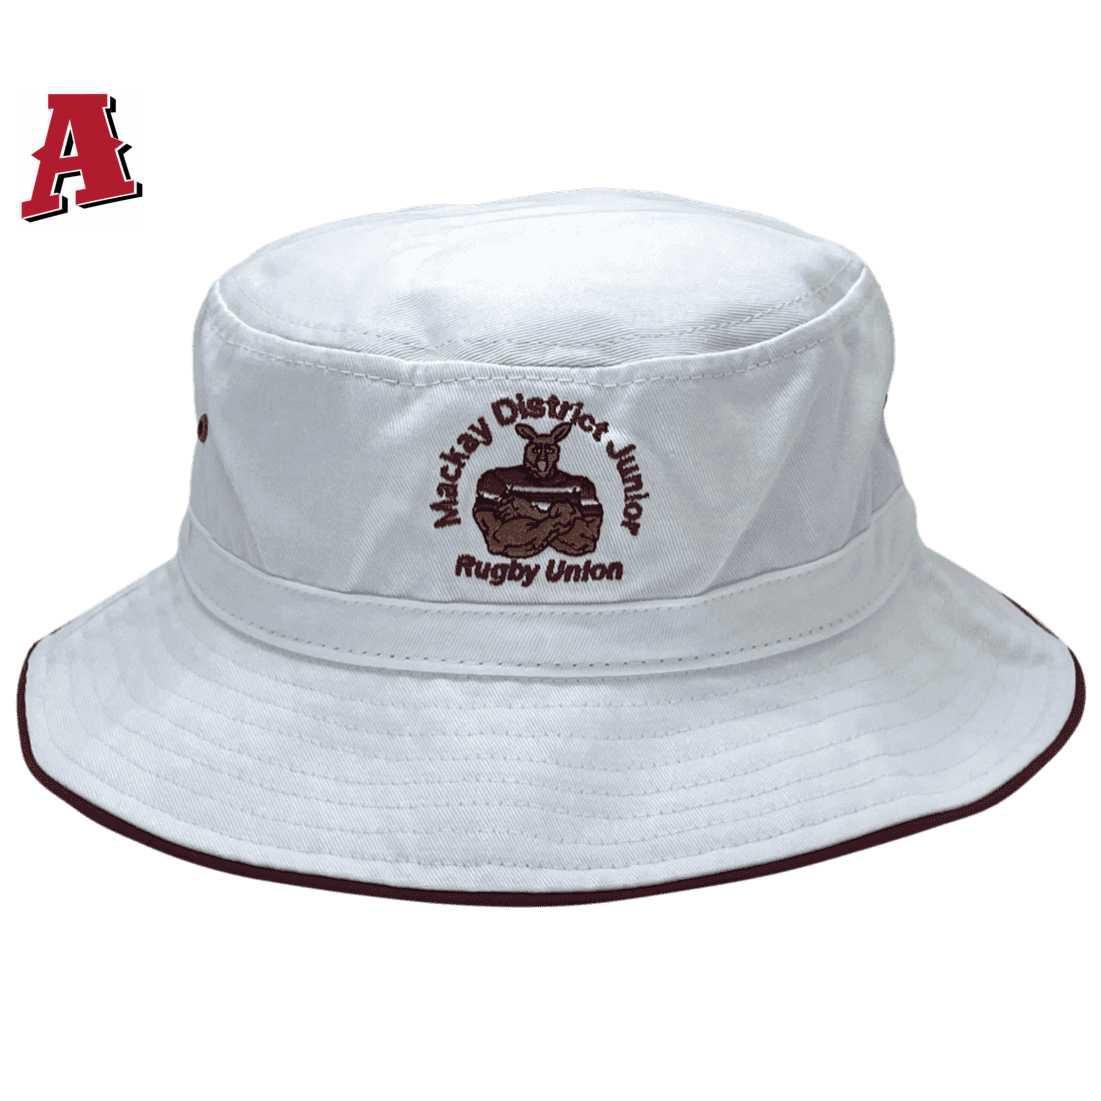 White Mackay District Junior Rugby Union Aussie Bucket Hat with adjustable crown 7cm brim cotton